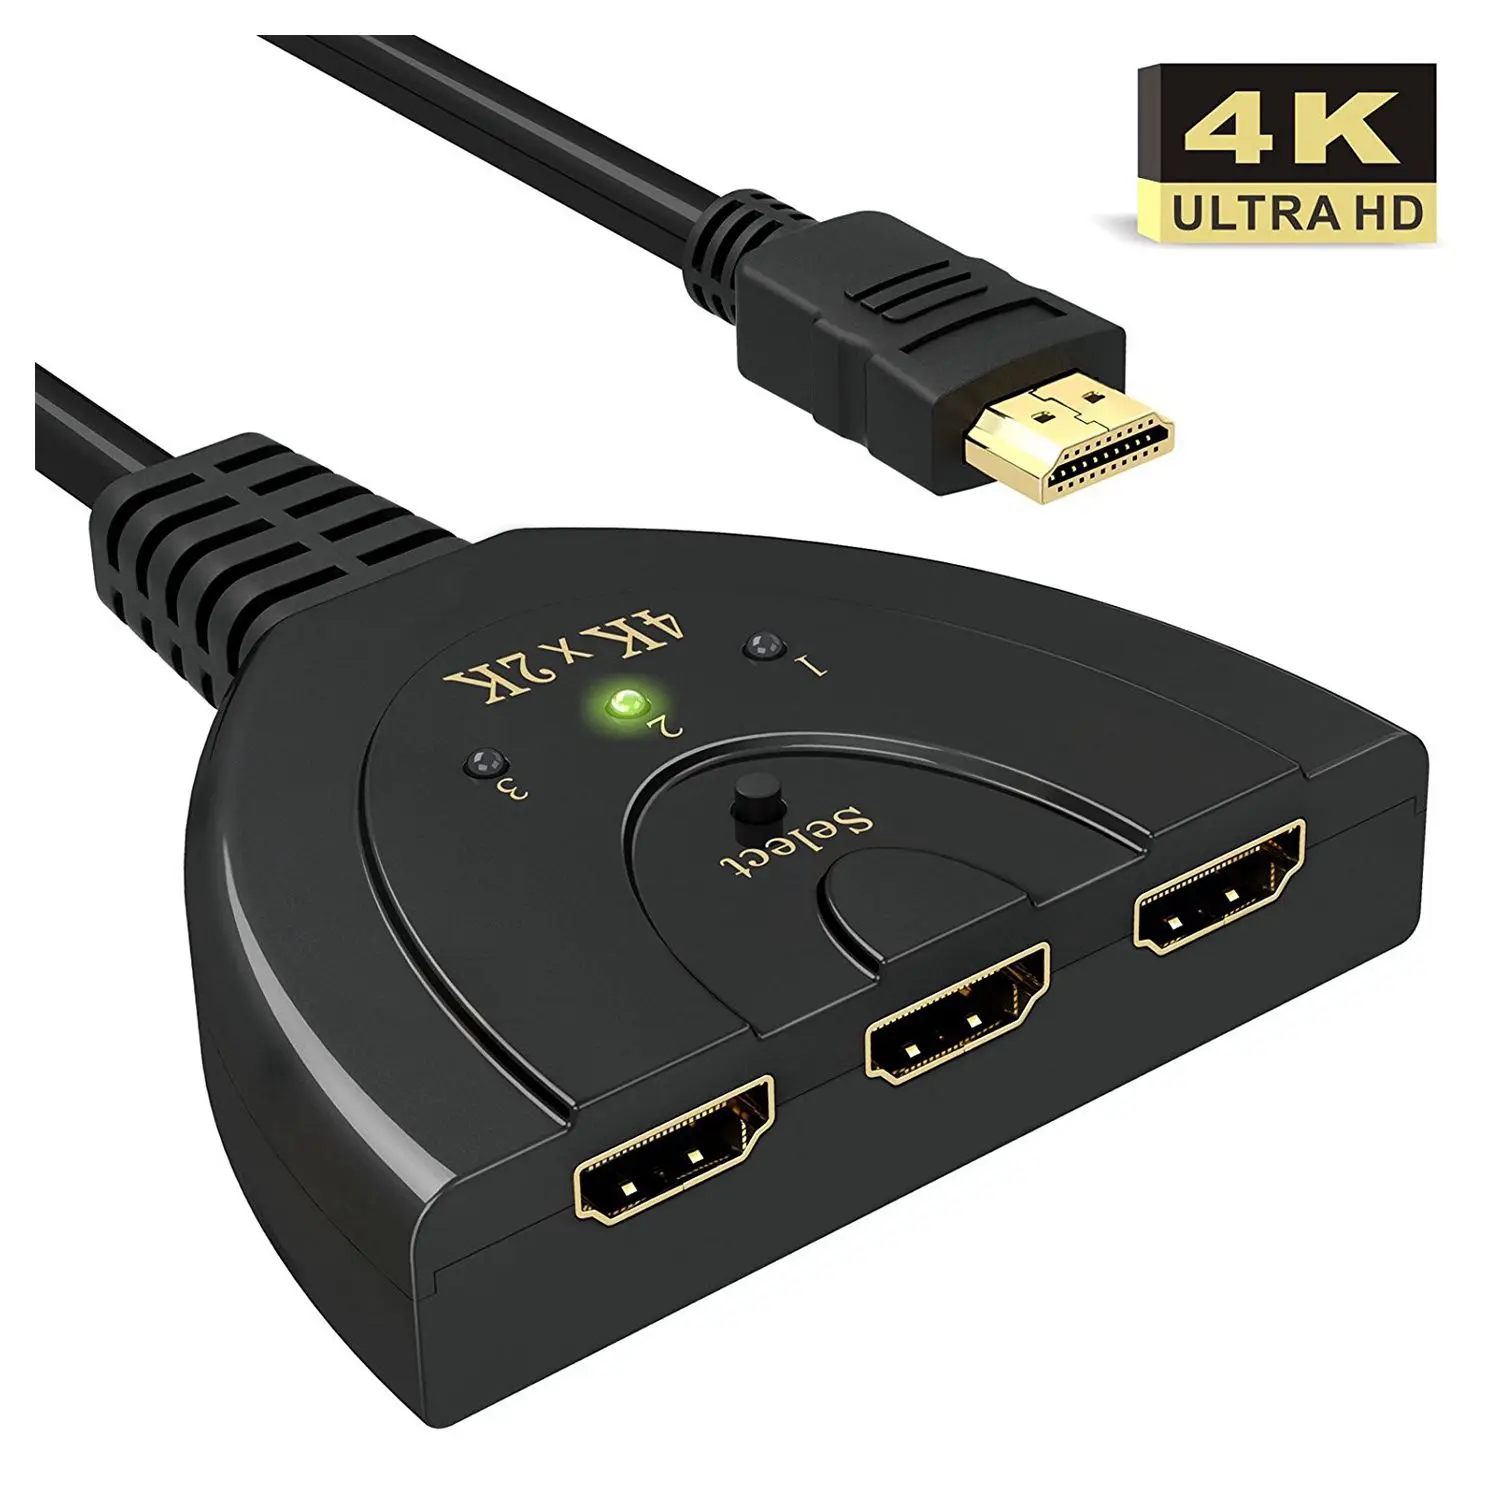 4 K HDMI Switch, 3-Порты и разъёмы HDMI разделитель Switcher Sup Порты и разъёмы s 4 K/полный HD1080p/3D с высоким Скорость помощью соединительного кабеля